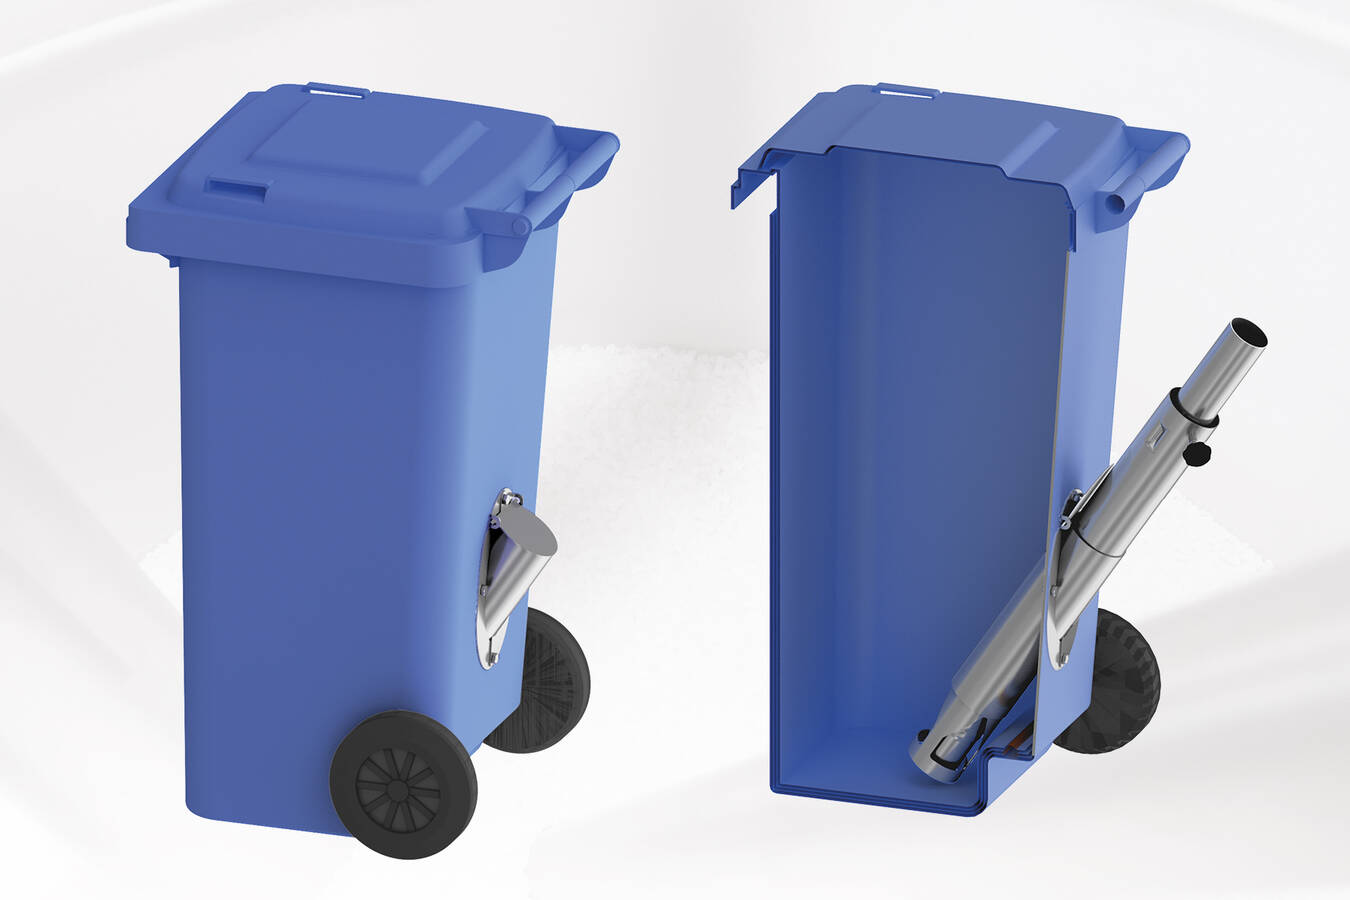 Saugstutzen für Kunststoffbehälter Siloanlagen Achberg bietet eine preisgünstige Lösung zur Nachrüstung eines Saugstutzens an den branchenüblichen Kunststoffbehältern. Diese verbessert das Handling deutlich und schützt gleichzeitig das Kunststoffgranulat vor Verunreinigungen.